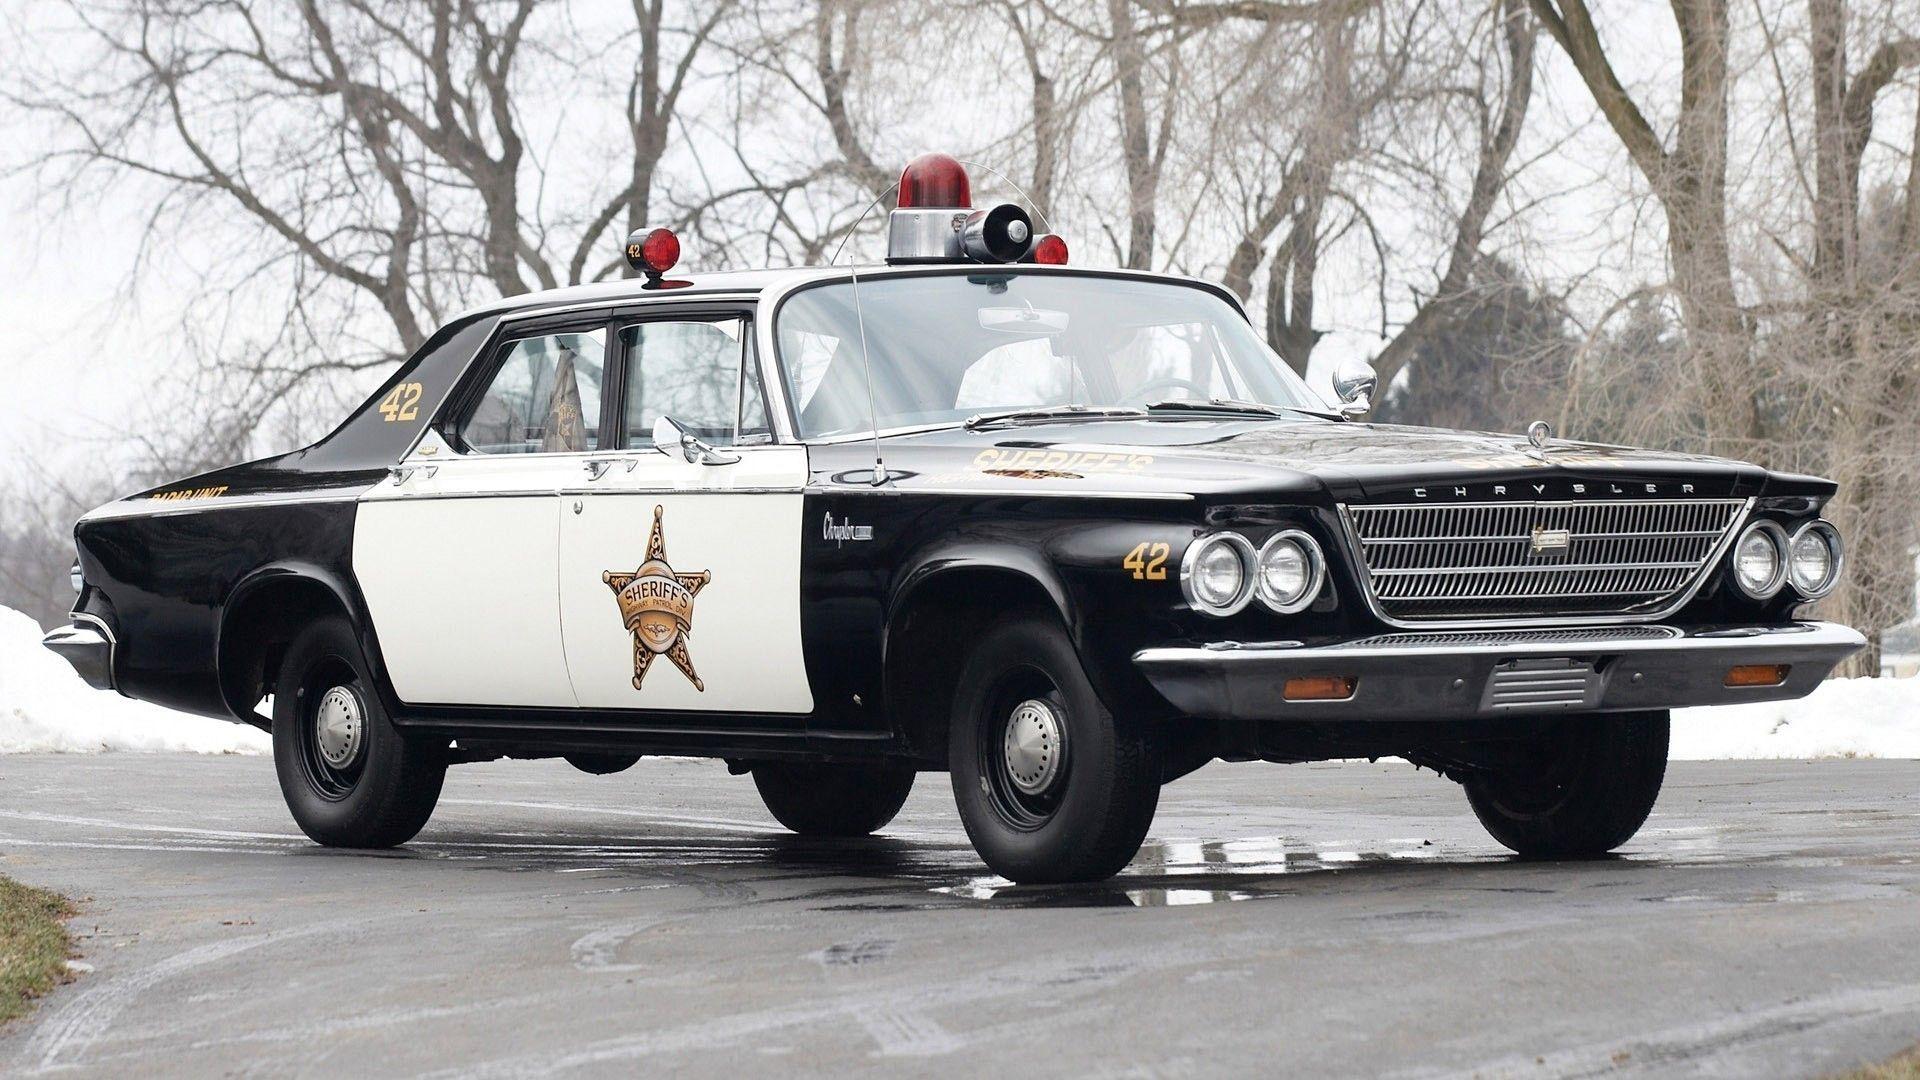 car, Police, Police Cars, Old Car, Chrysler, Sheriff, Road